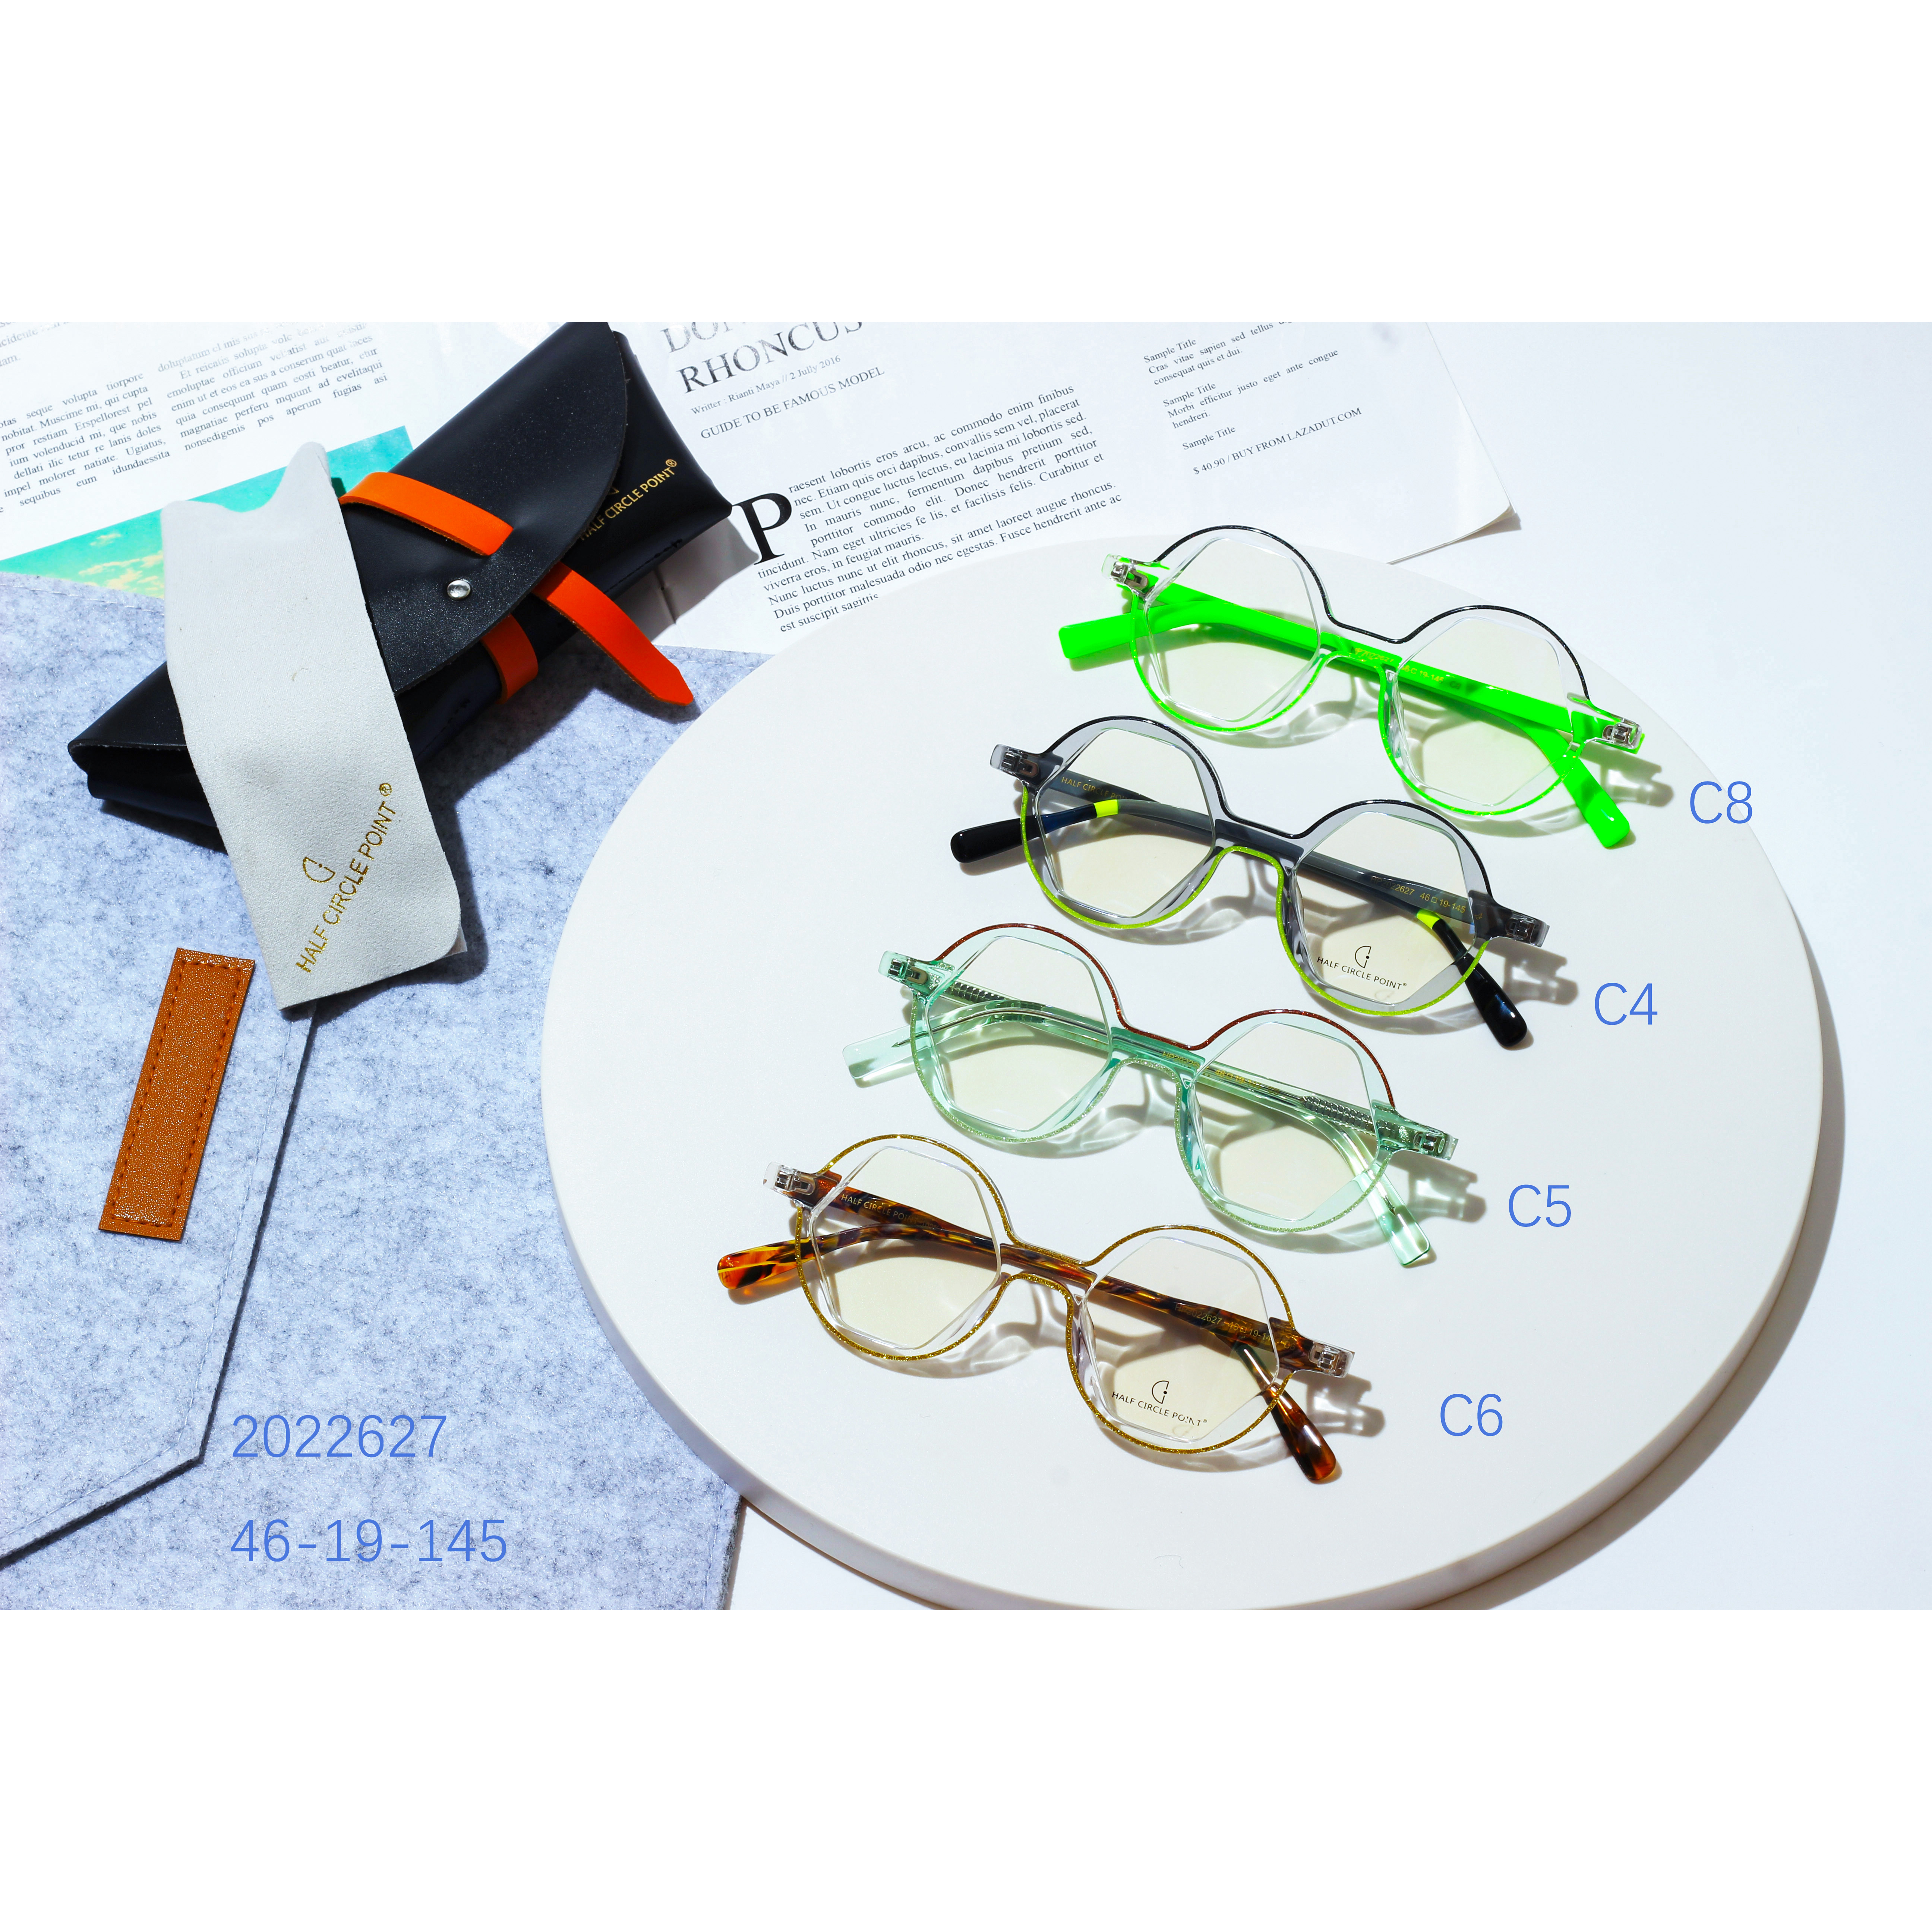 एसीटेट माज़ुक्शेल्ली ब्लू लाइट चश्मा चश्मा फ़्रेम विशेष रुप से प्रदर्शित छवि